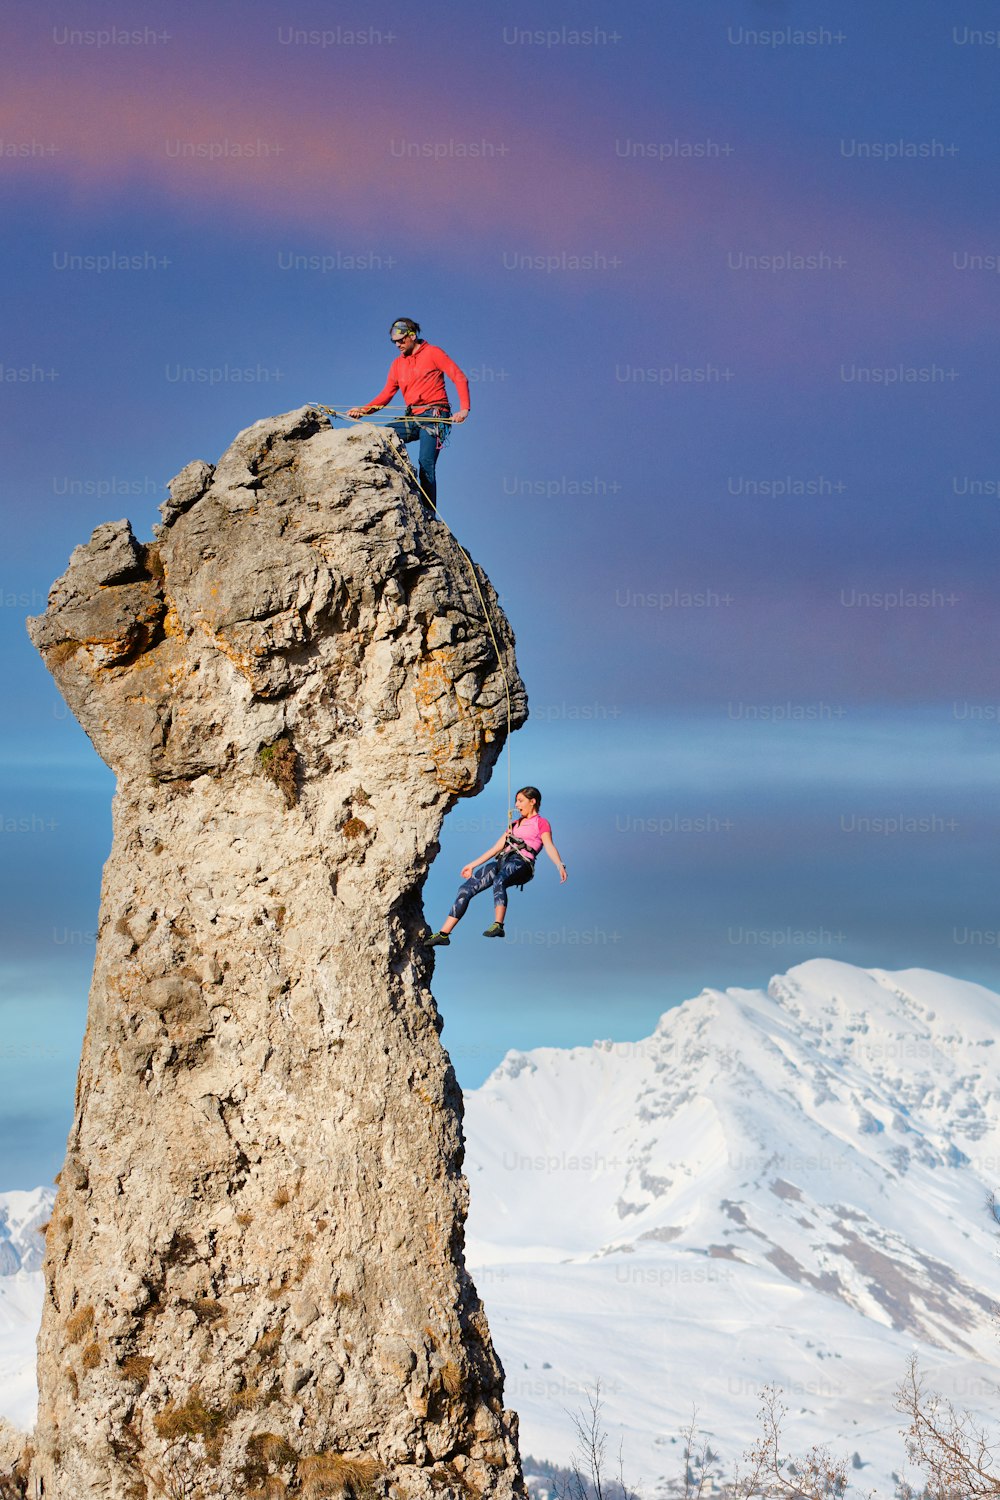 Un grimpeur au sommet fait descendre son partenaire de la corde